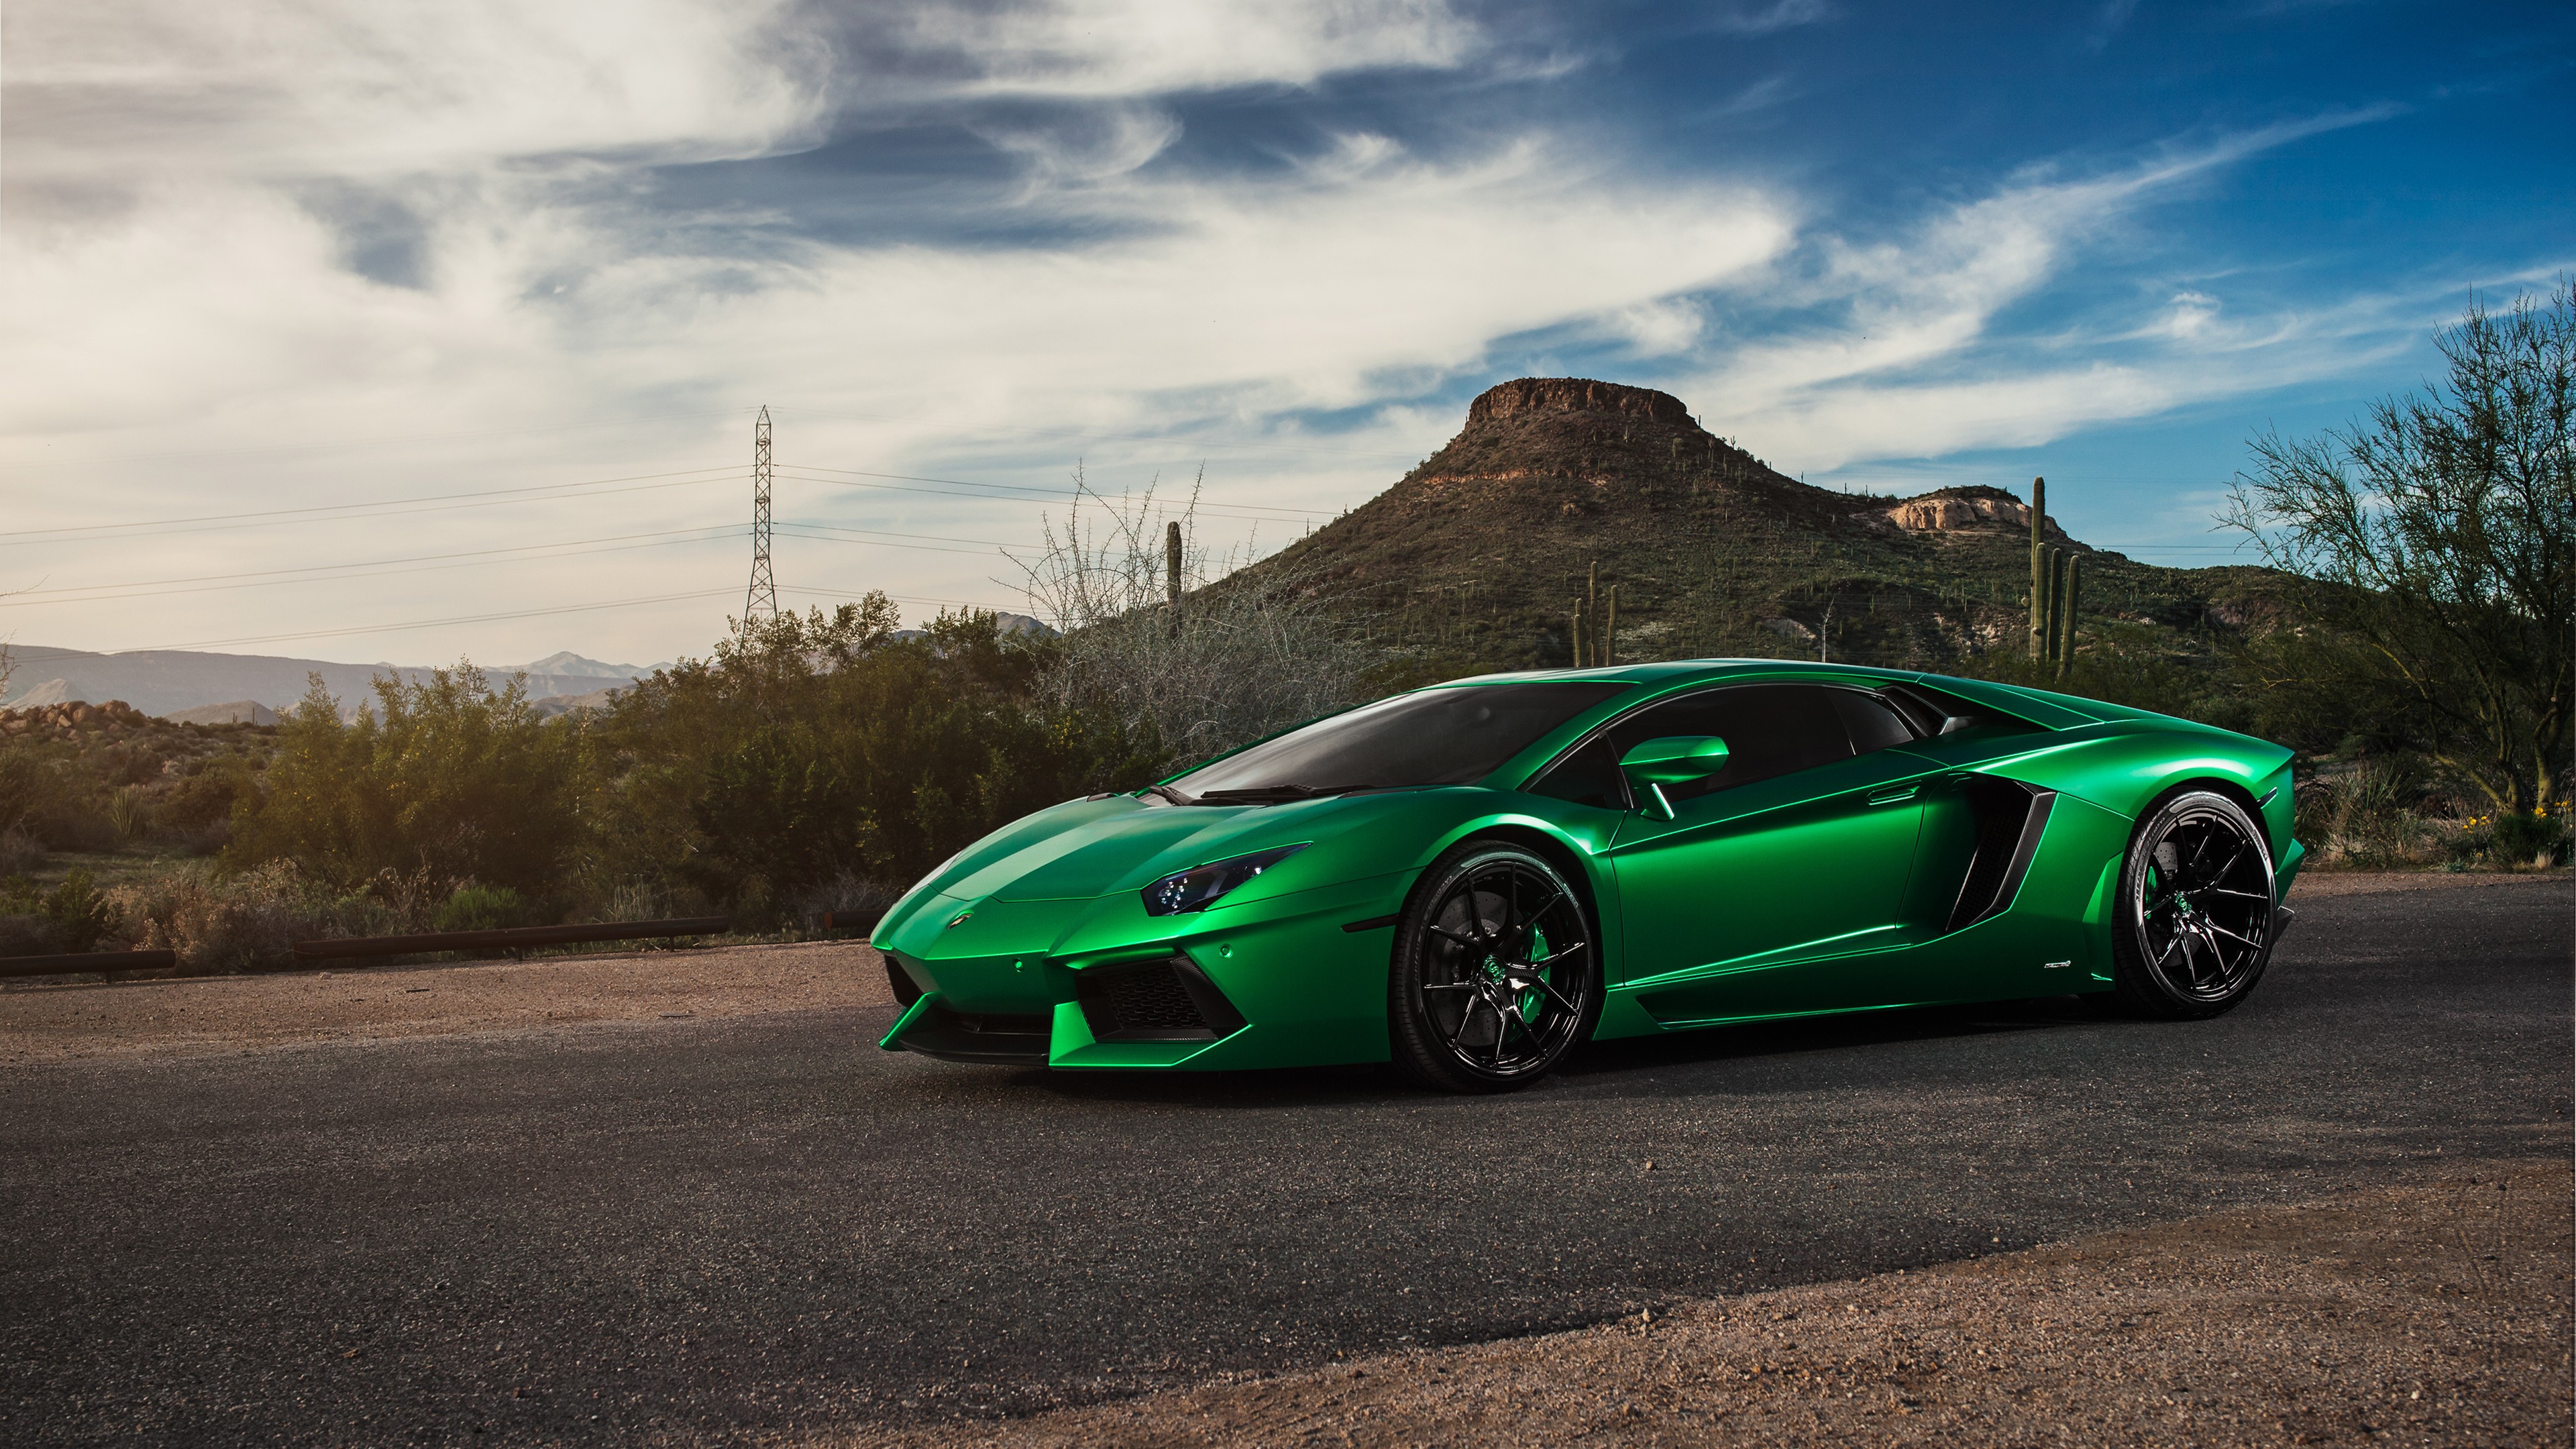 Lamborghini Aventador Green 4k, HD Cars, 4k Wallpapers ...